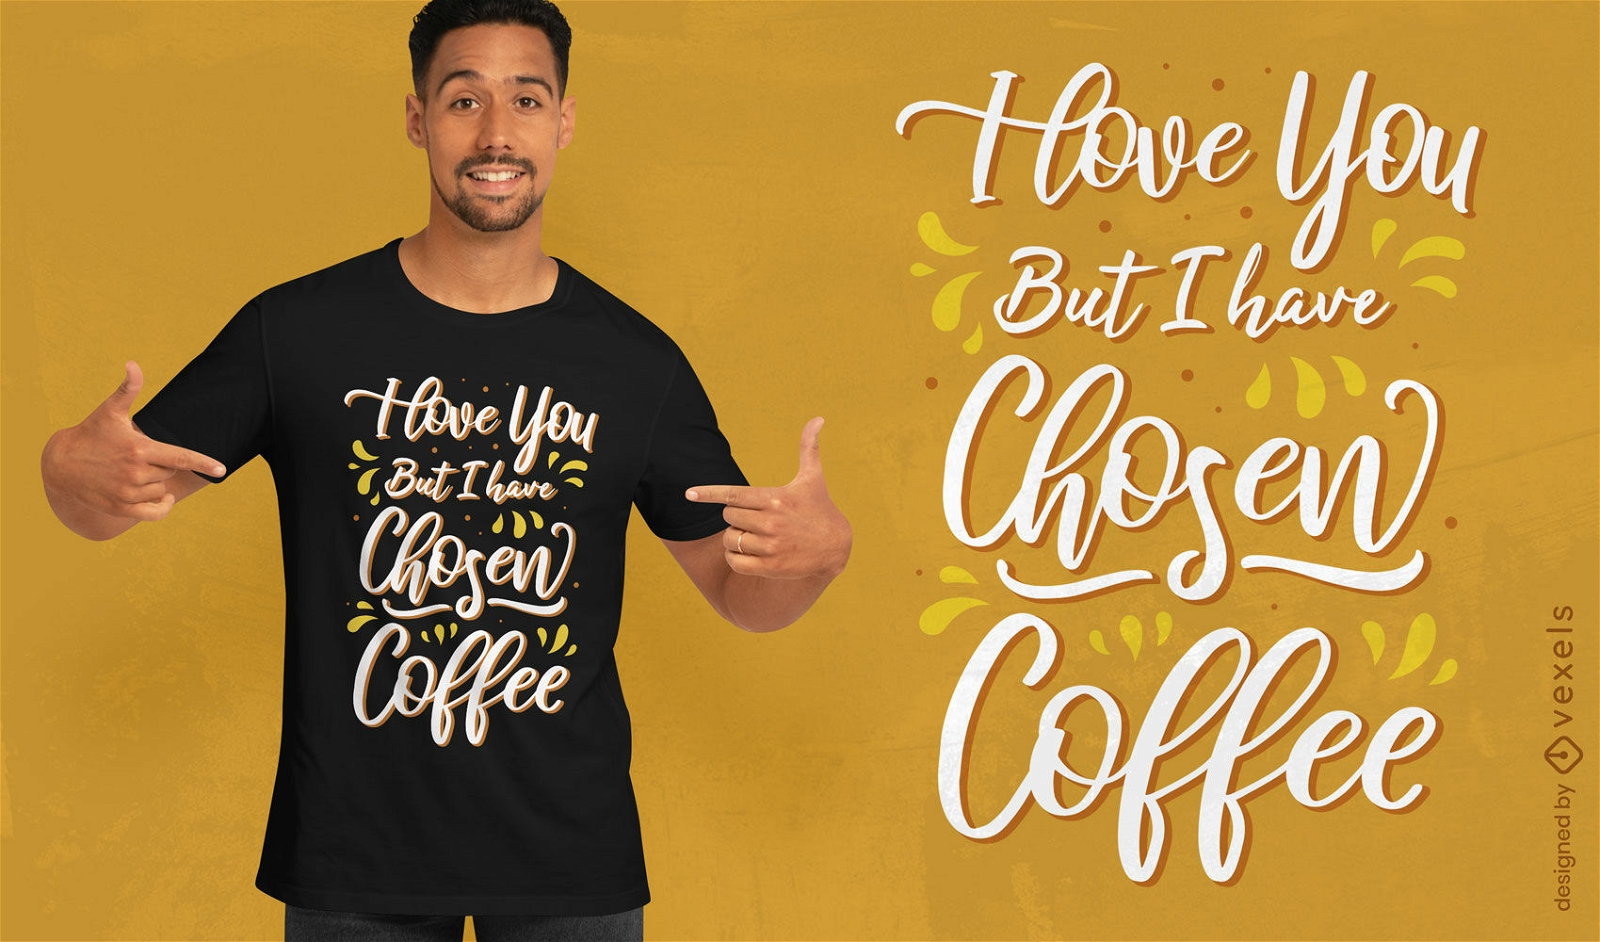 Love coffe quote t-shirt design